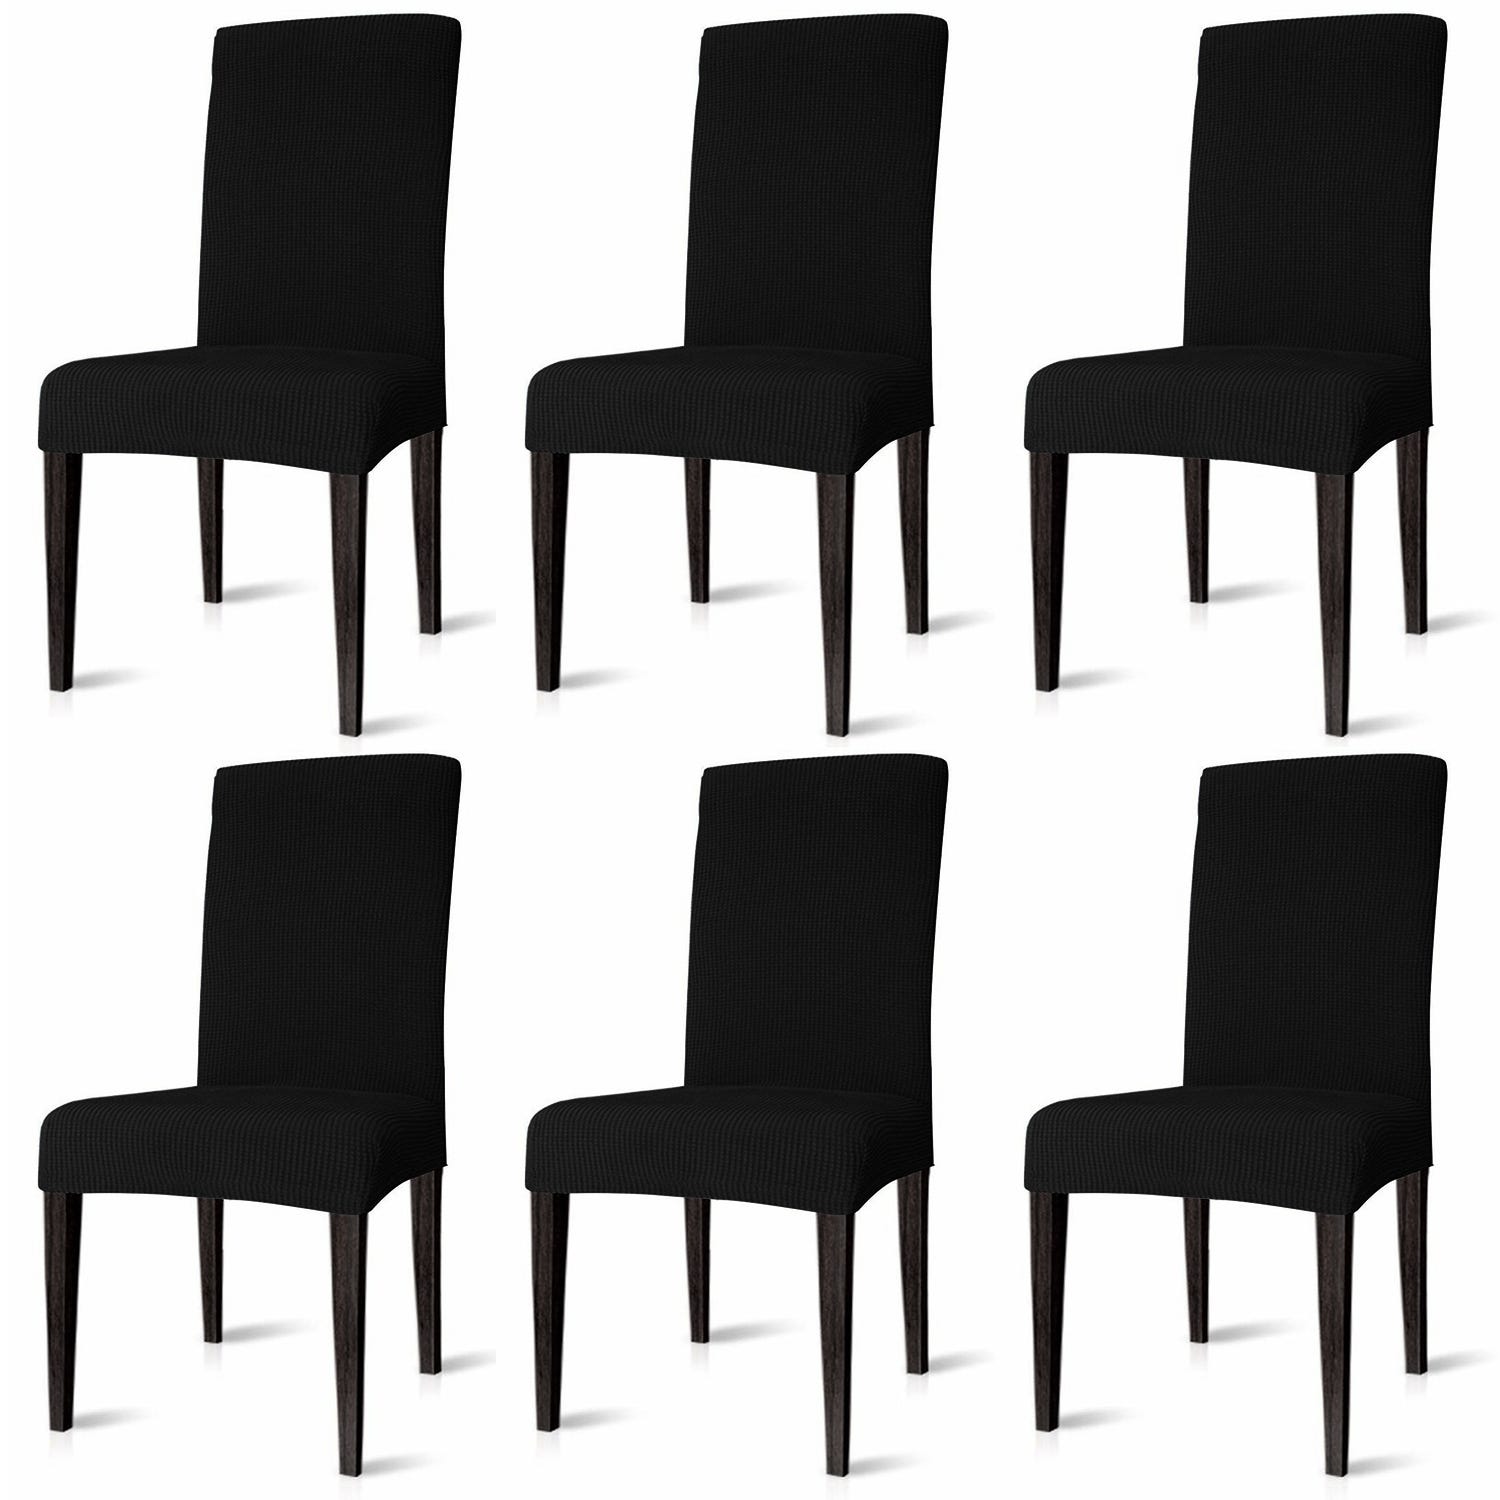 6x sedia copri sedia sedie sedie impermeabili sedie coperchio di